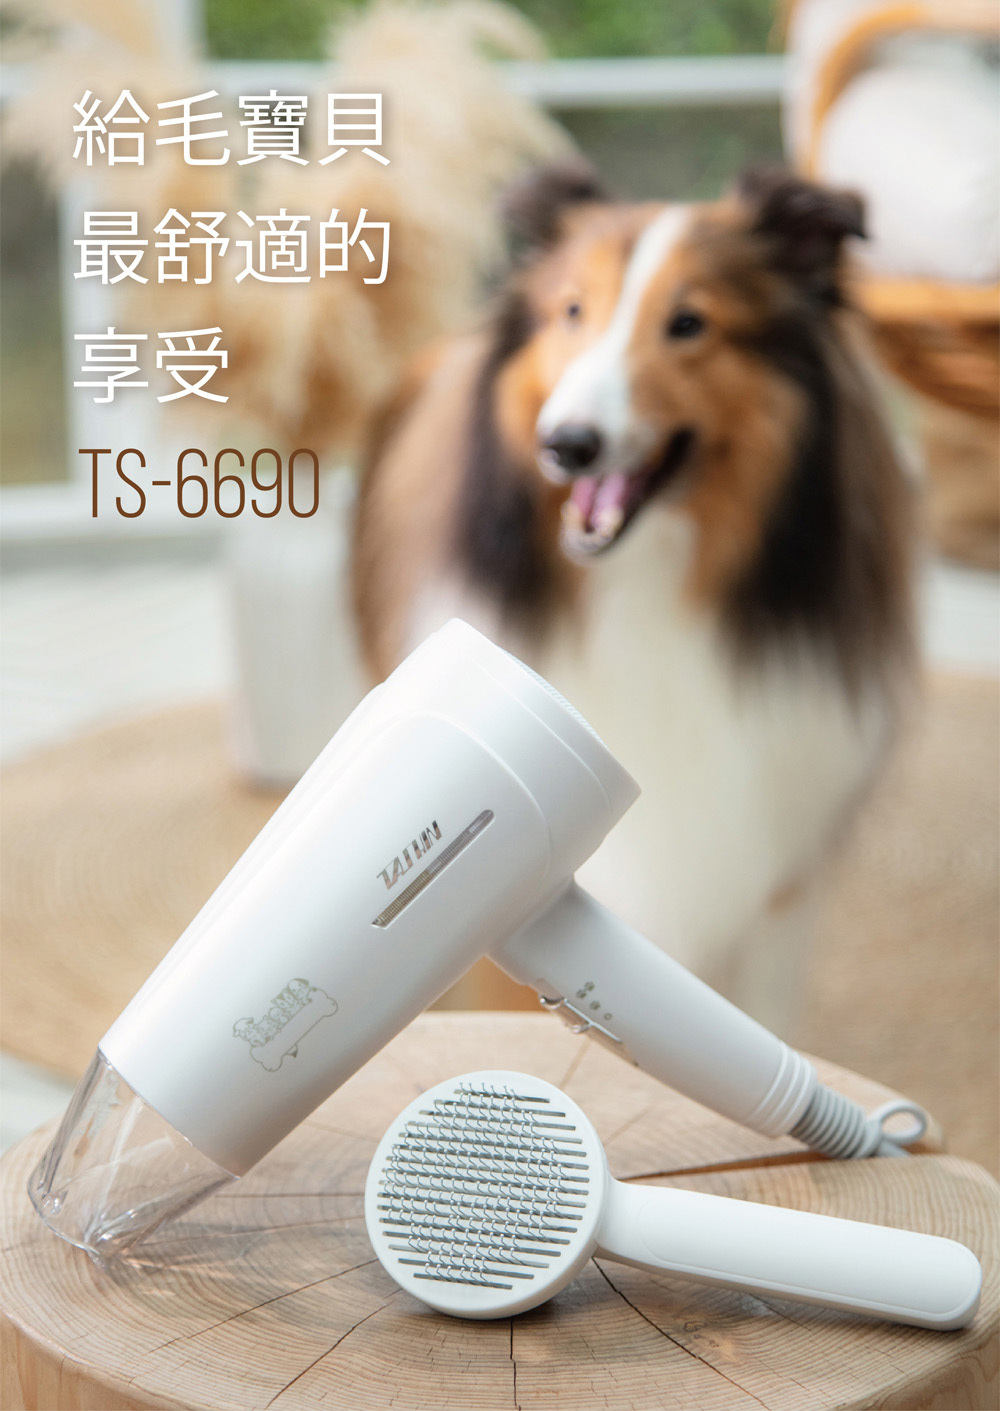 TASHIN 達新牌TS-6690 寵物專用吹風機銀離子抗菌光觸媒吹風機附寵物梳